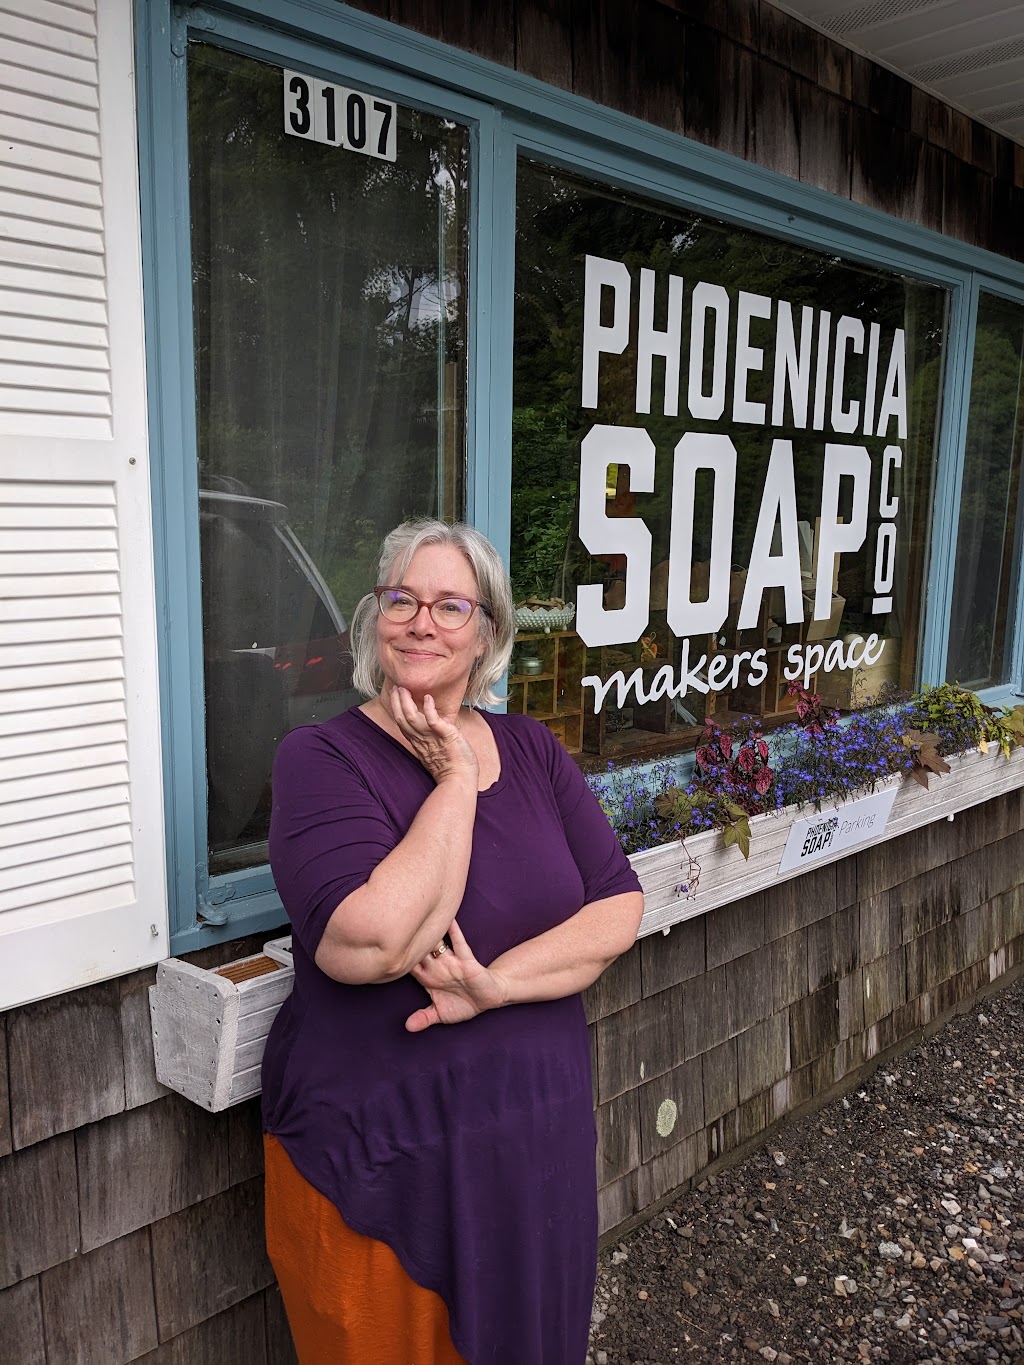 Phoenicia Soap Makers Space | 3107 NY-28, Shokan, NY 12481 | Phone: (845) 688-8900